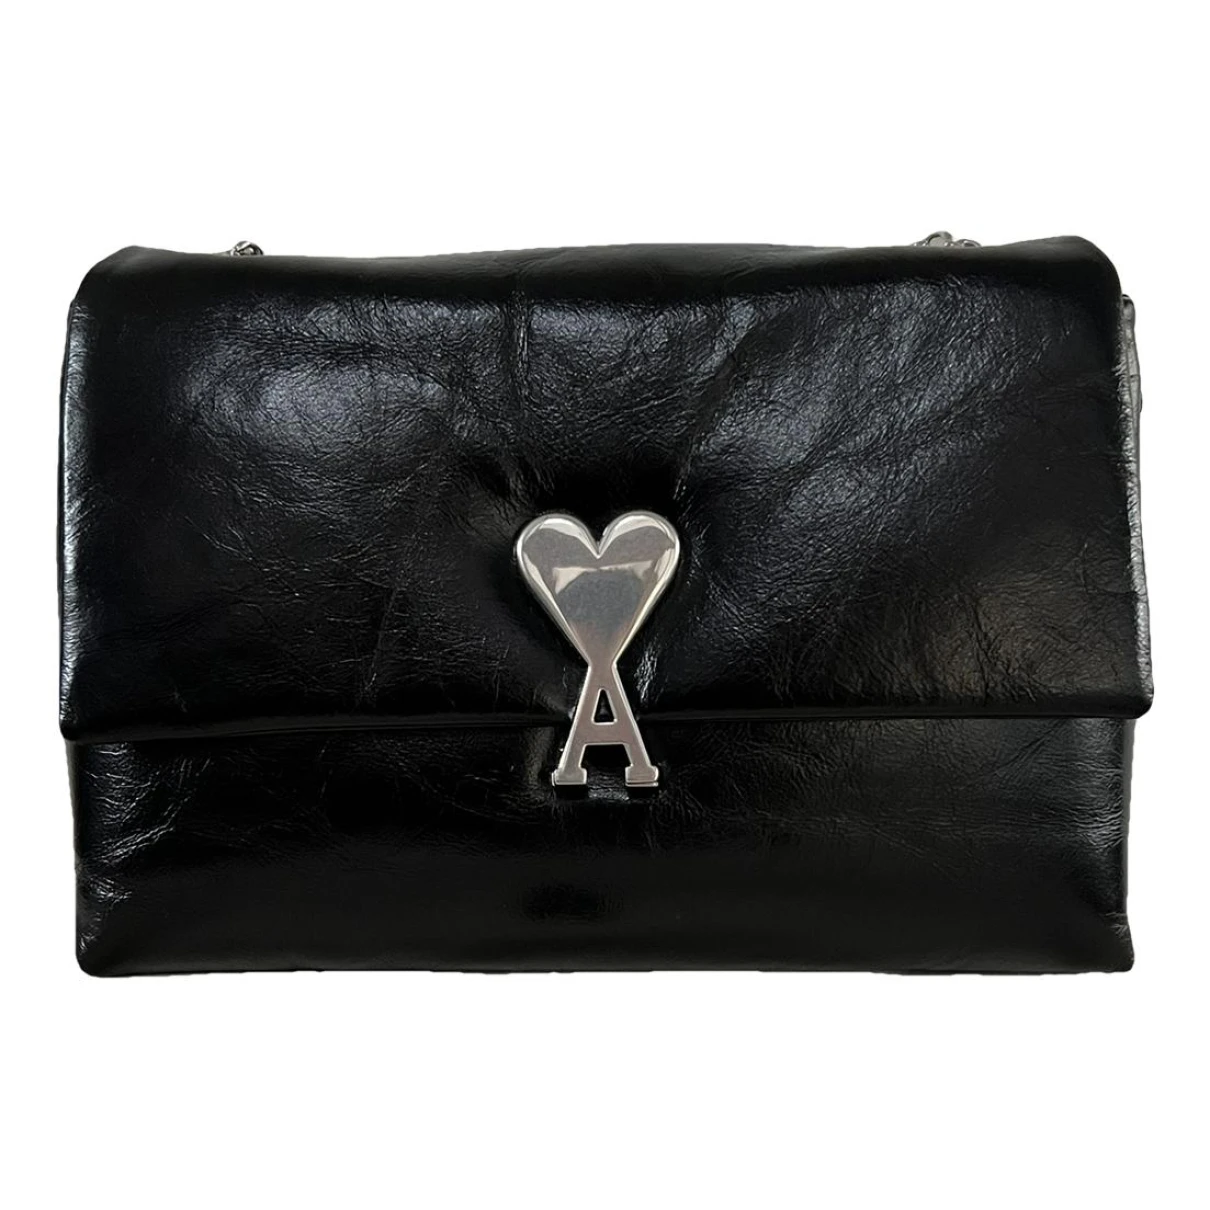 Pre-owned Ami Alexandre Mattiussi Patent Leather Handbag In Black